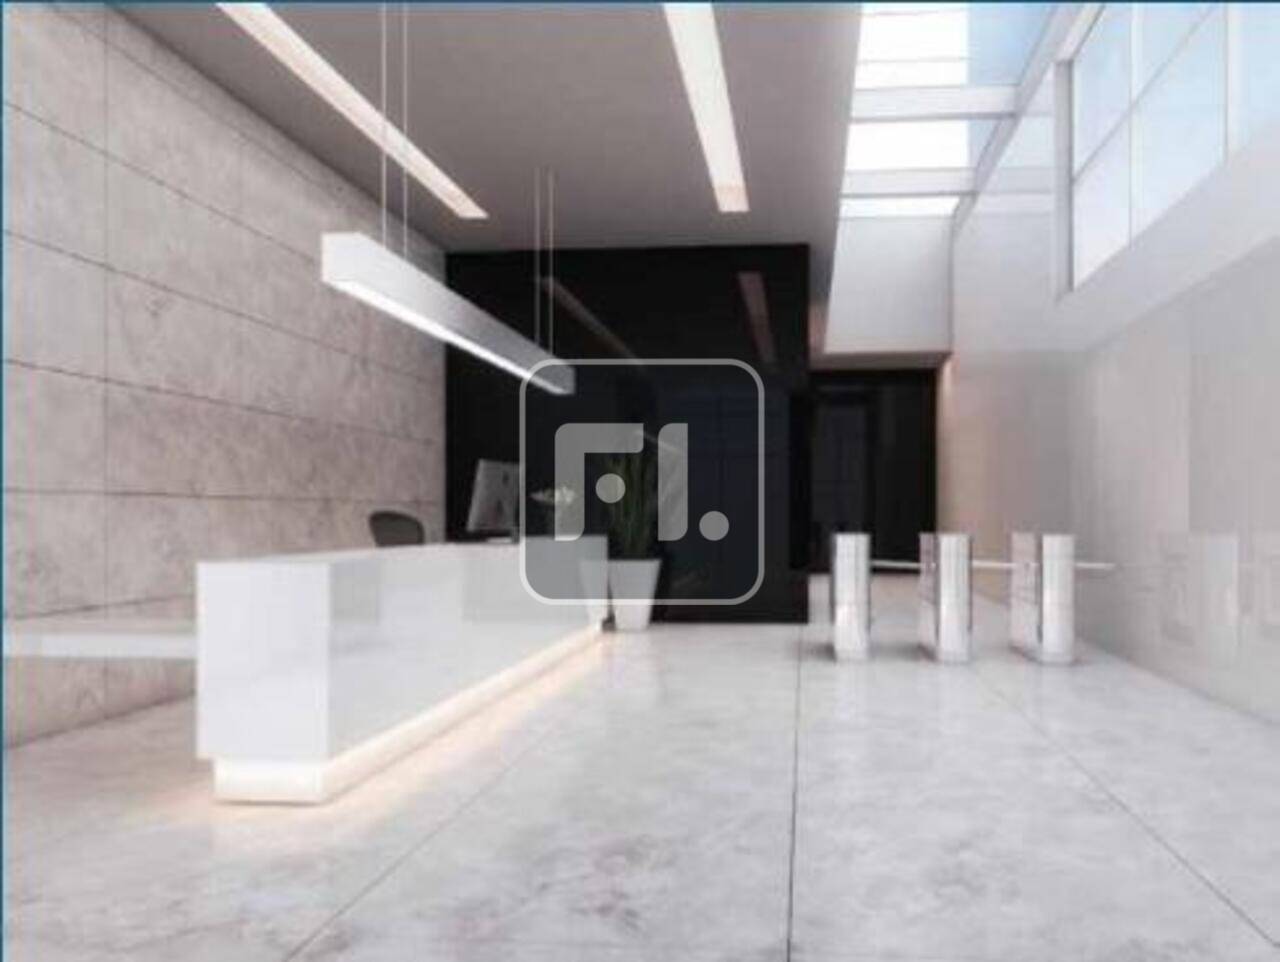 Conjunto comercial com 356 m² na Bela vista para Locação/Venda, com piso elevado com carpete,